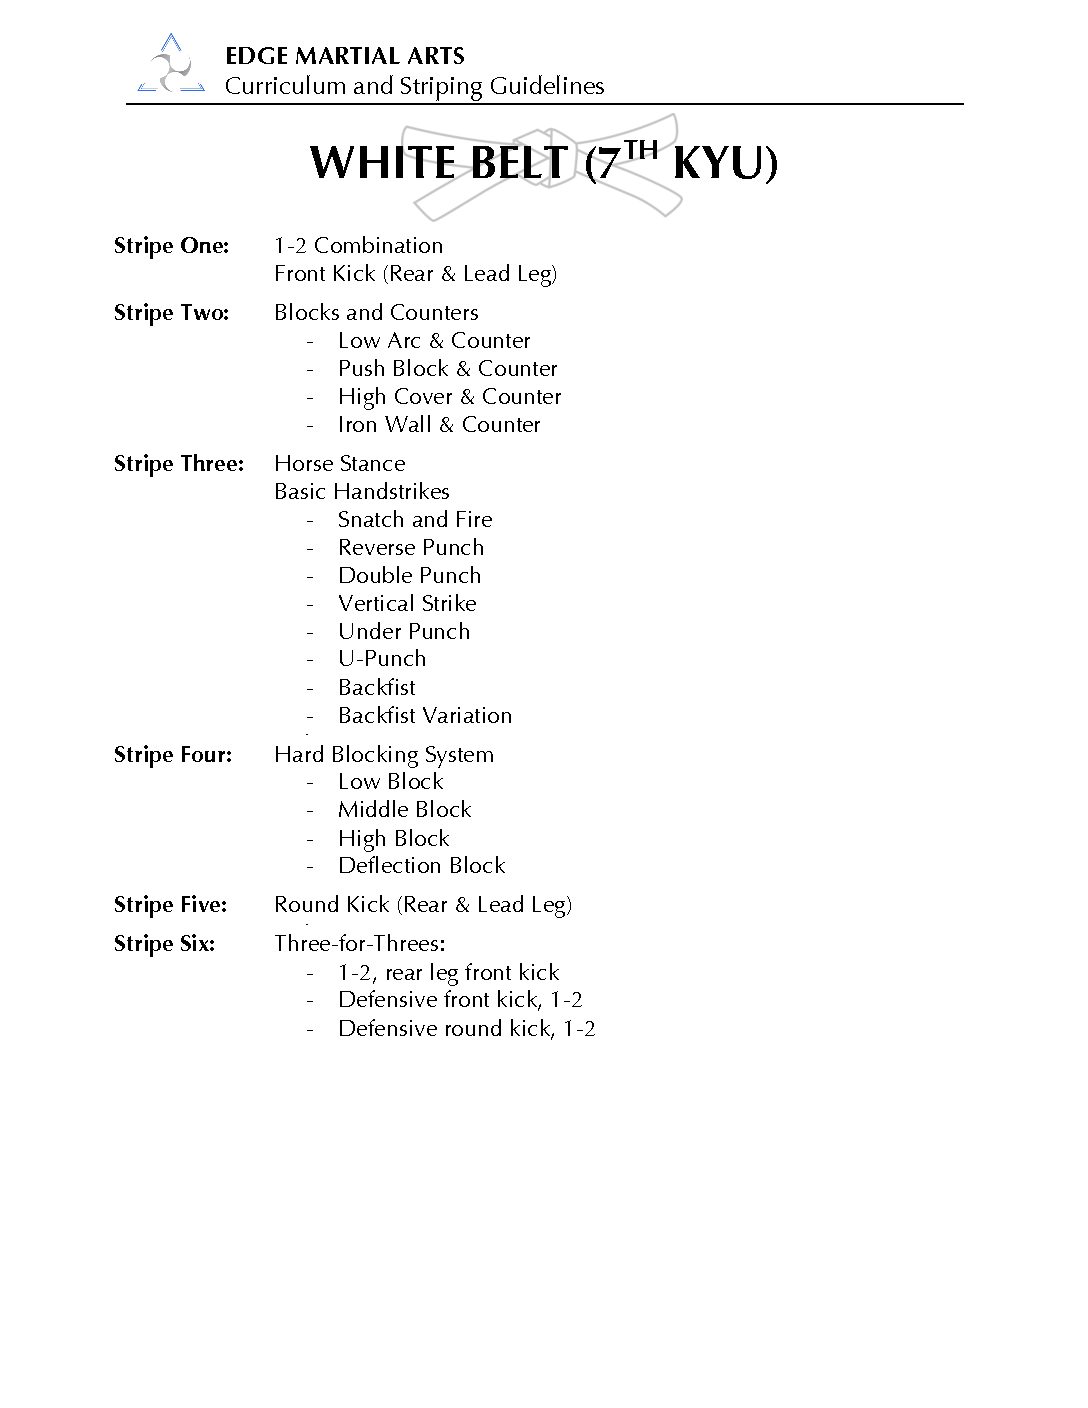 EMA White Belt Curriculum | Edge Martial Arts